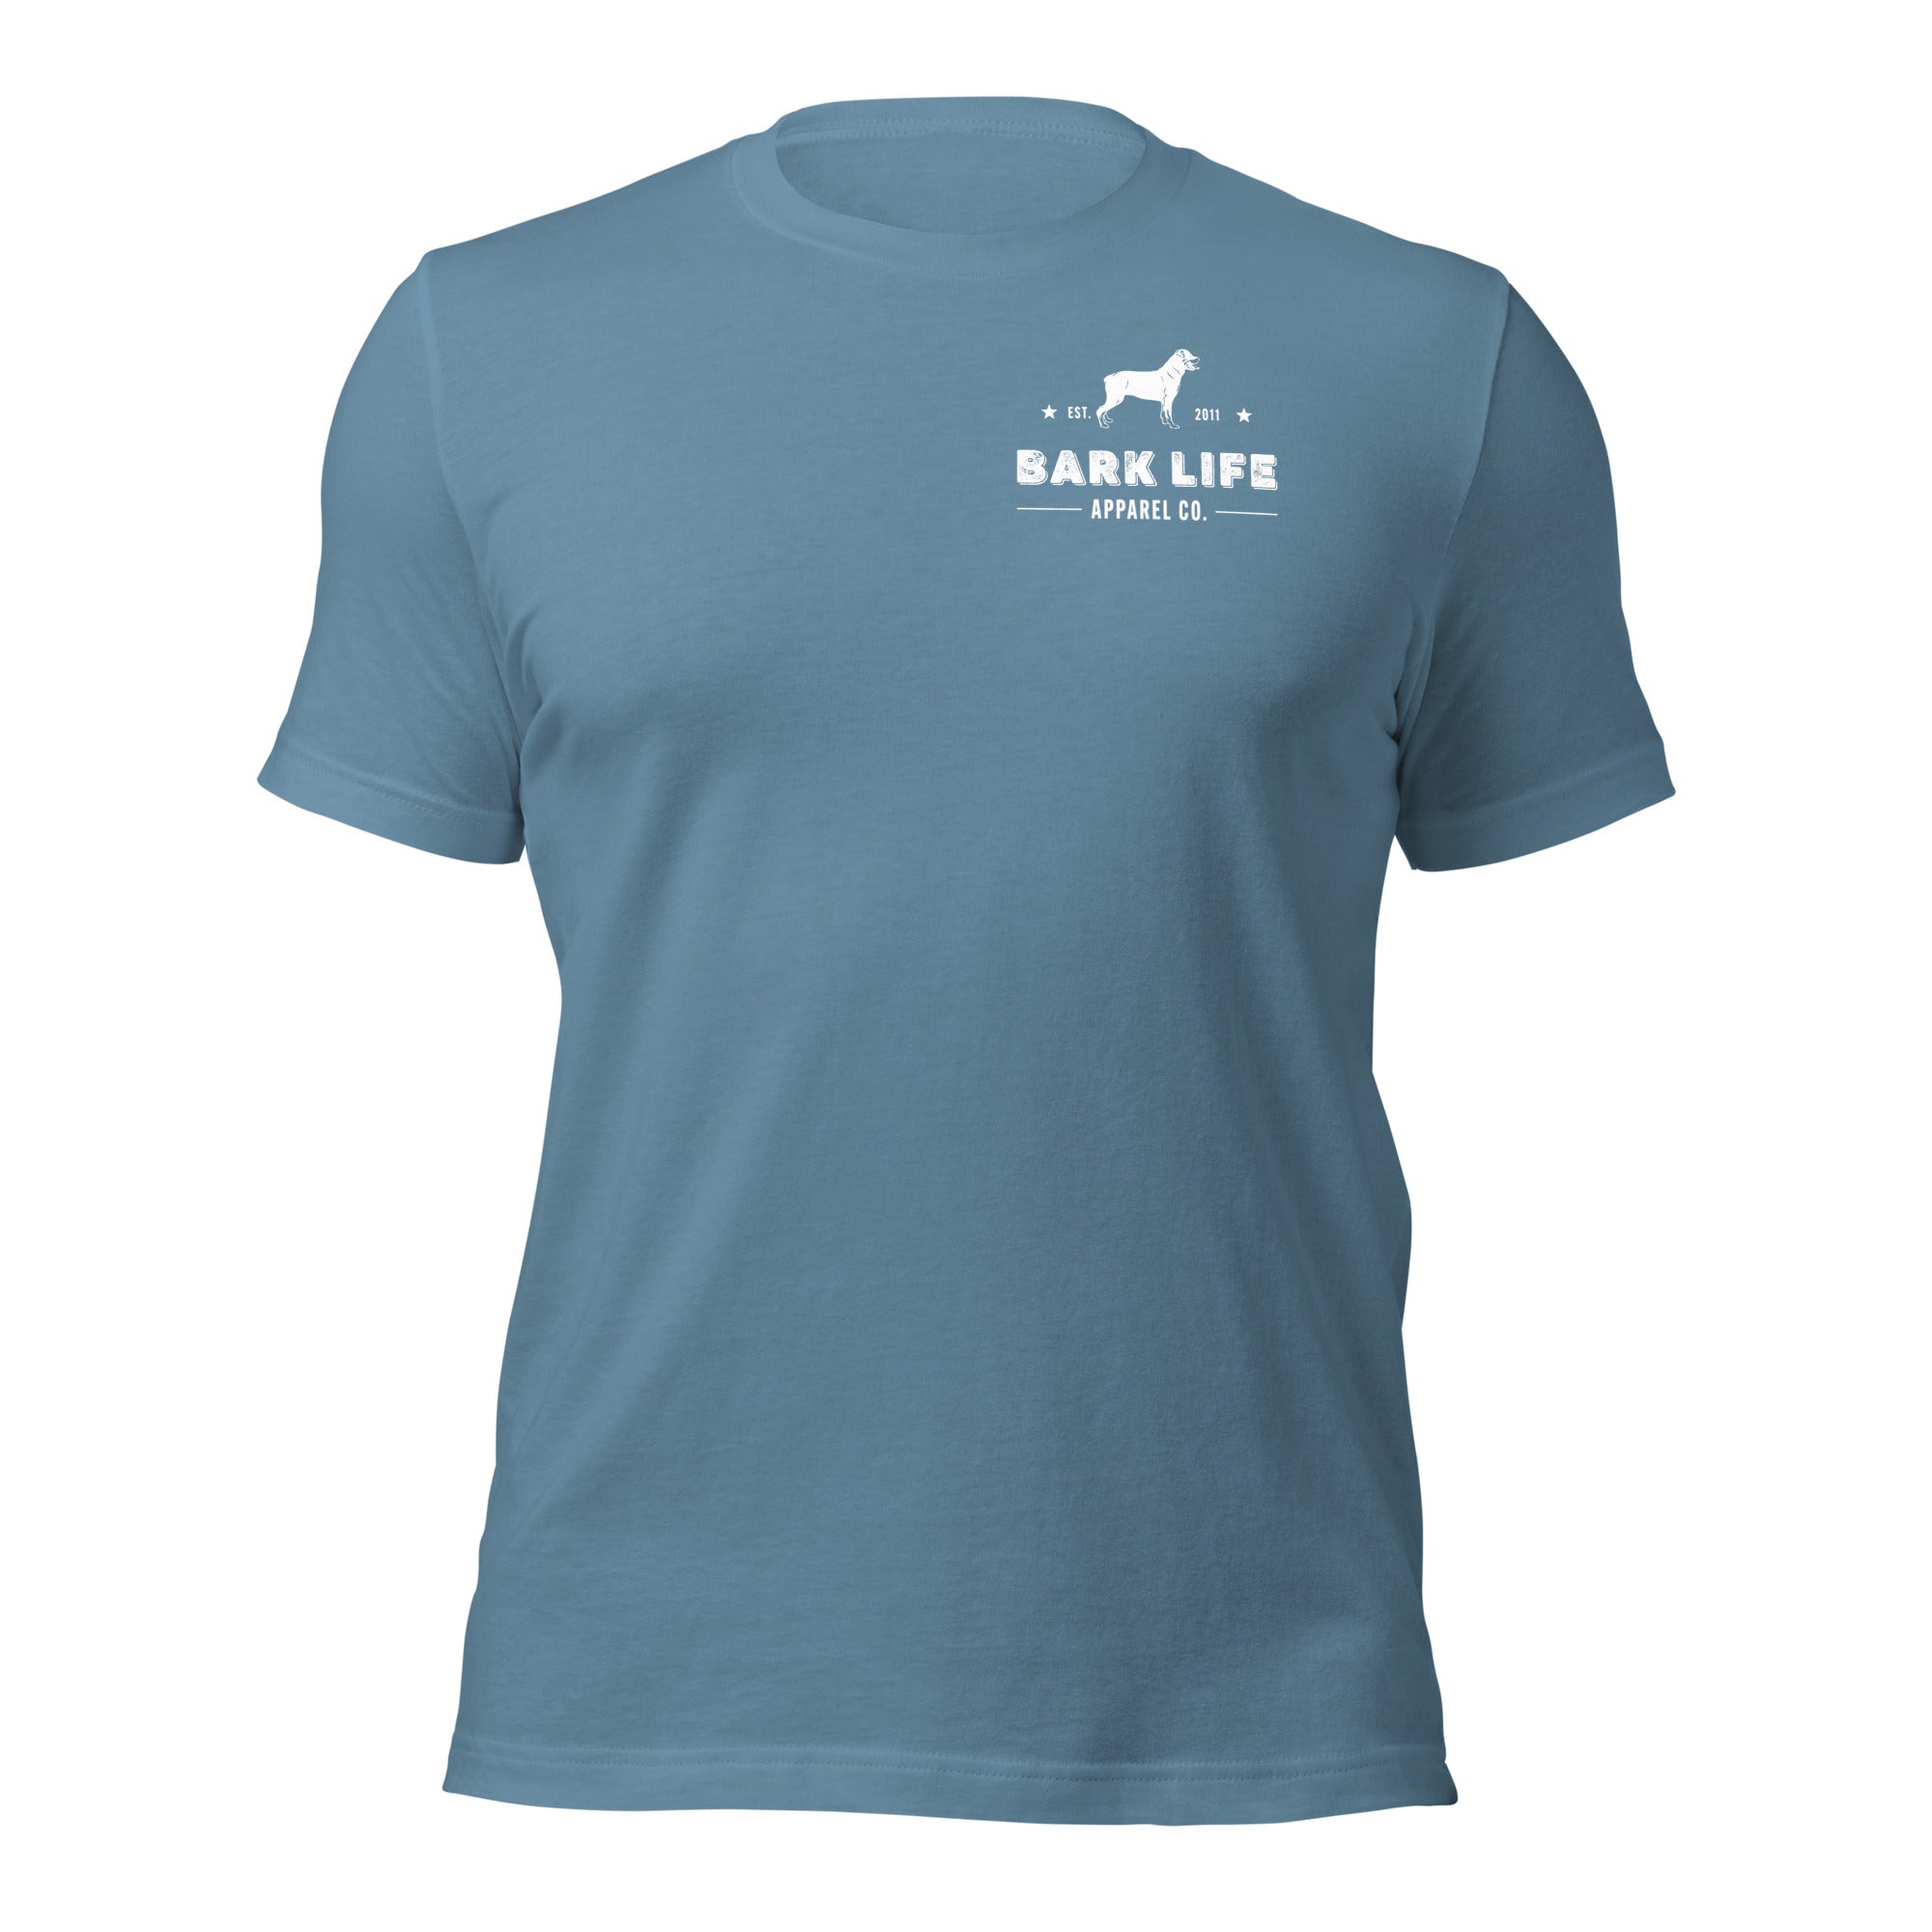 Rottweiler - Short Sleeve Cotton Tee  Shirt